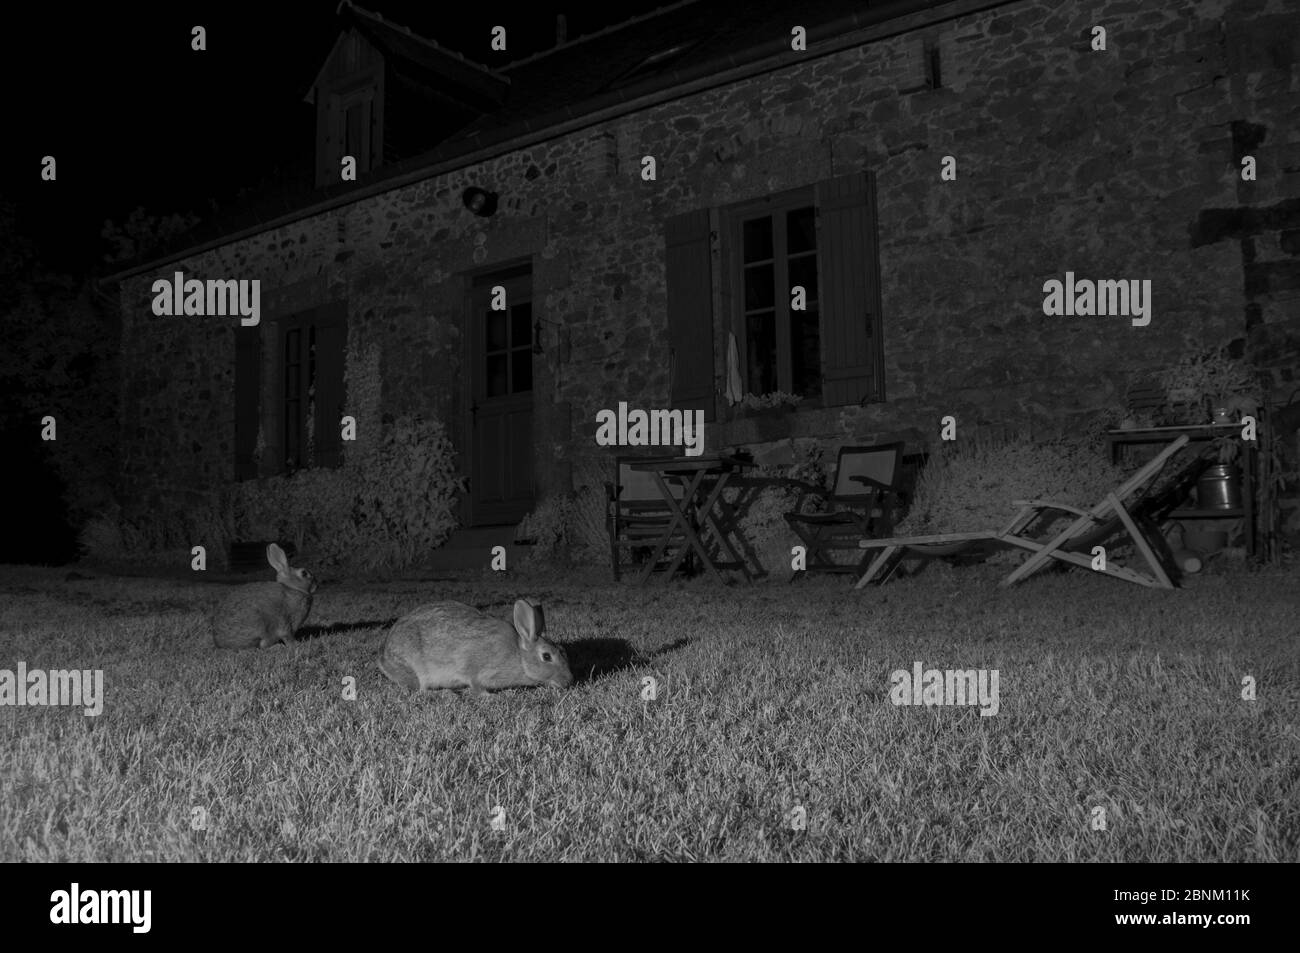 Lapins européens (Oryctolagus cuniculus) en extérieur de la maison, pris avec lumière infrarouge la nuit, France, juin. Banque D'Images